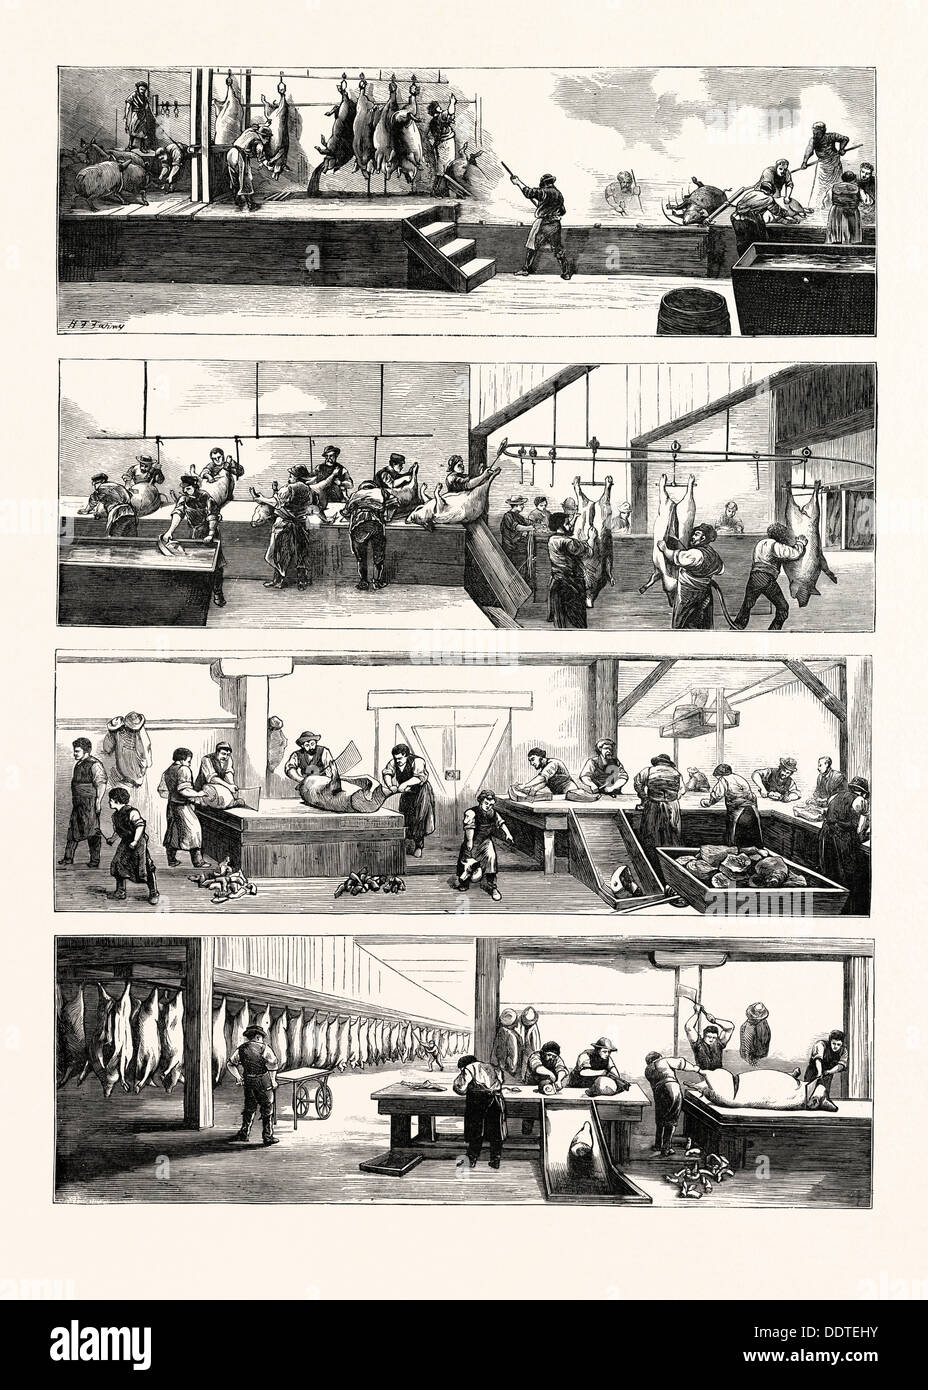 L'INDUSTRIE AMÉRICAINE ET DU COMMERCE, de l'abattage de porcs à Cincinnati, États-Unis d'Amérique, Etats-Unis, USA, 1873 Gravure Banque D'Images